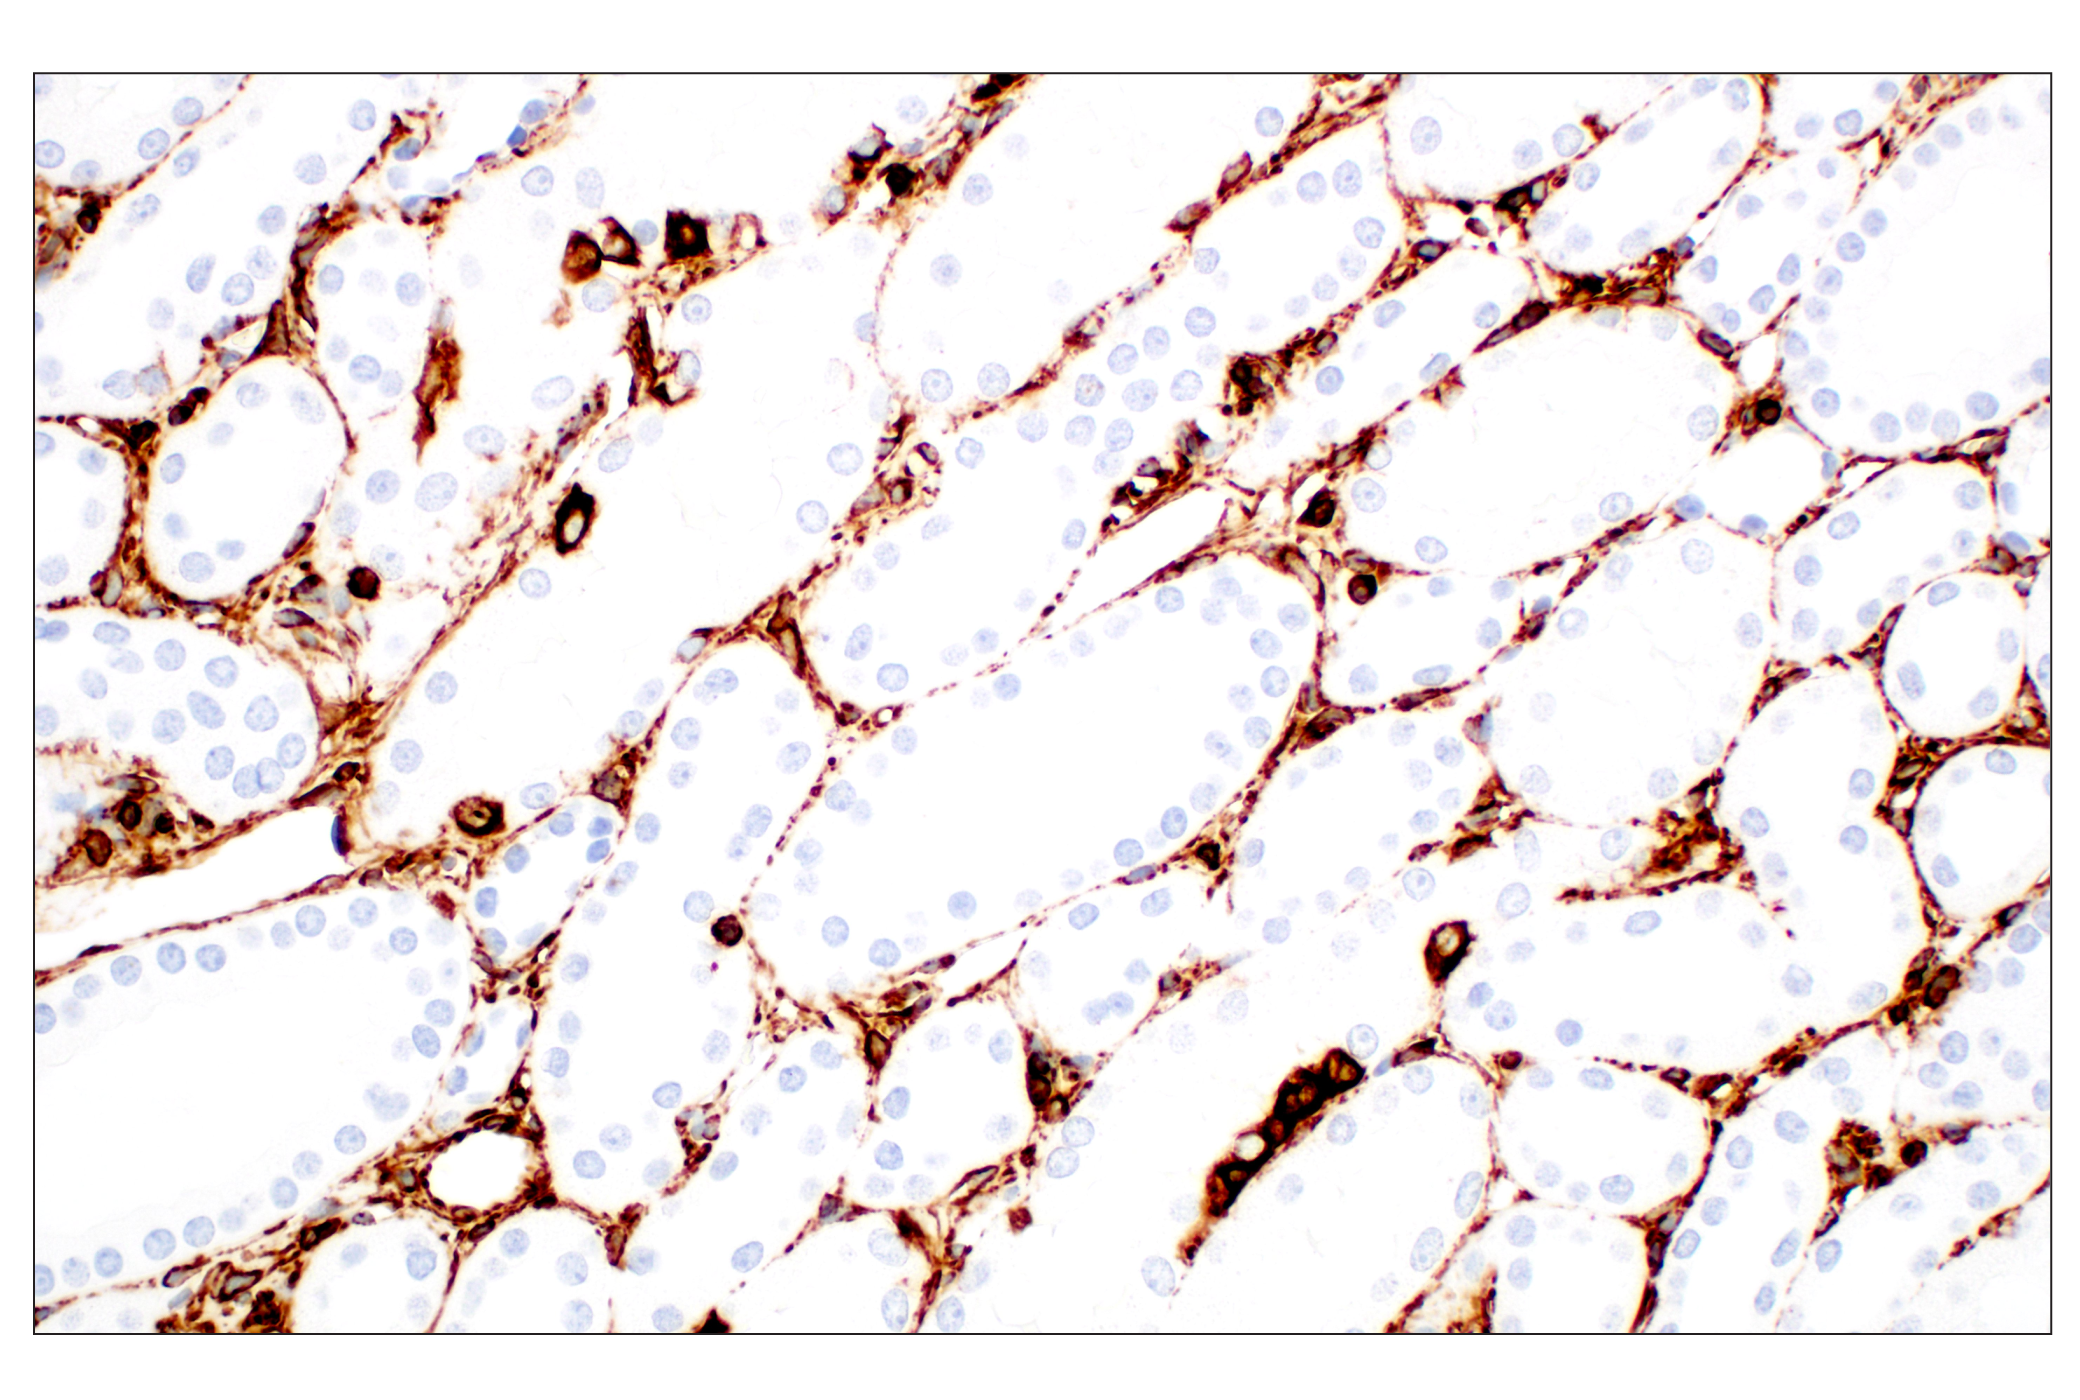  Image 42: Cell Fractionation Antibody Sampler Kit